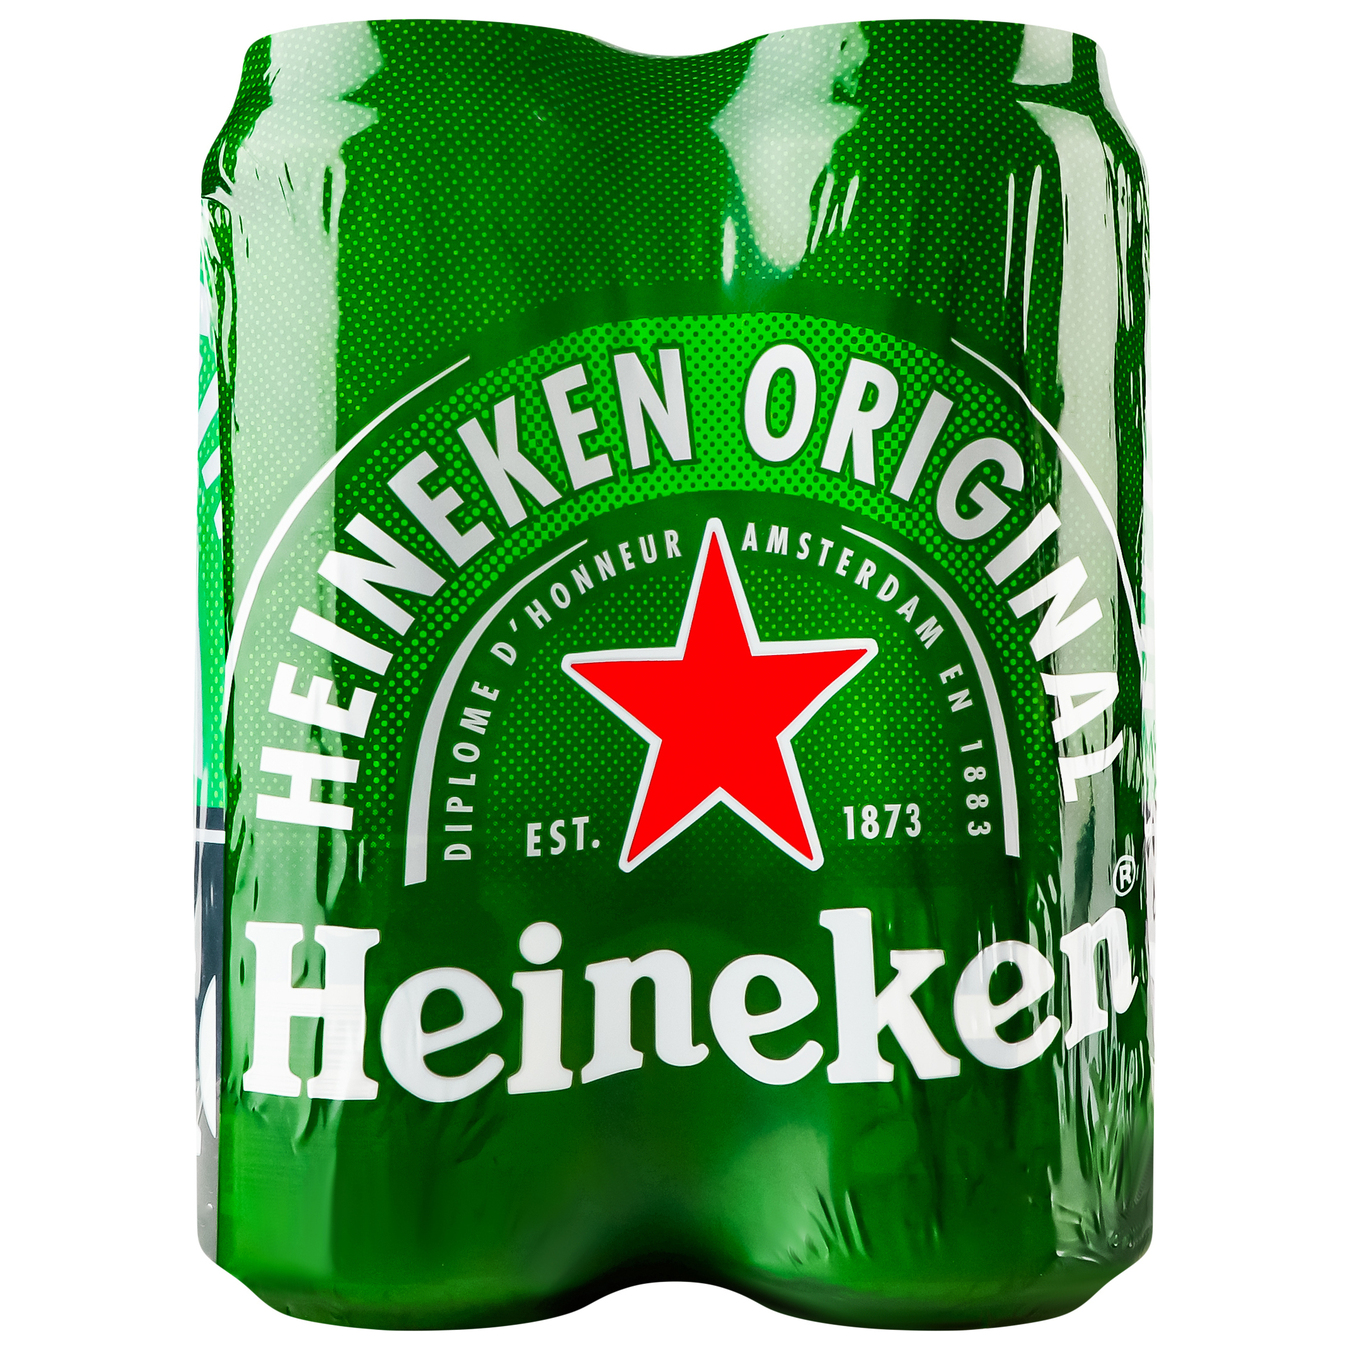 Пиво Heineken світле фільтроване пастеризоване 5% 4*500мл/уп